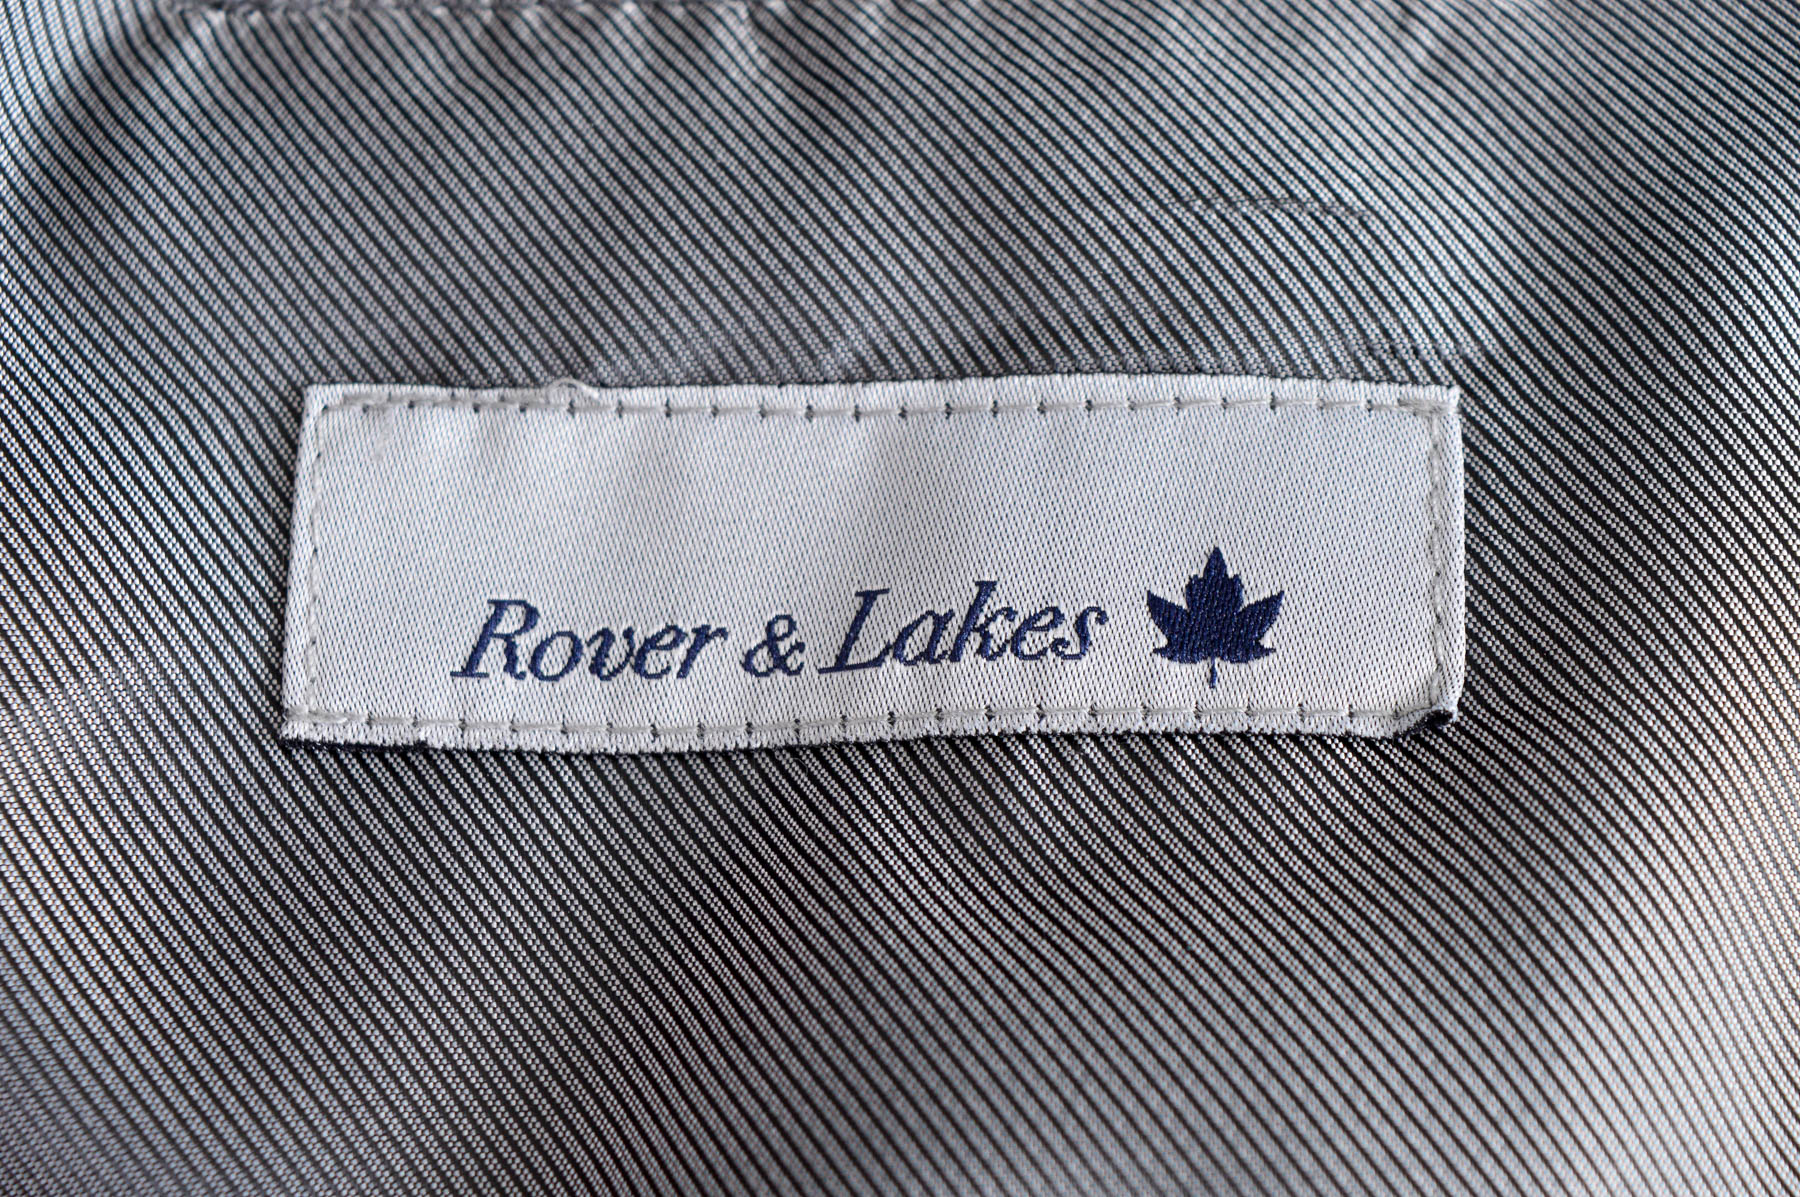 Ανδρικό σακάκι - Rover & Lakes - 2